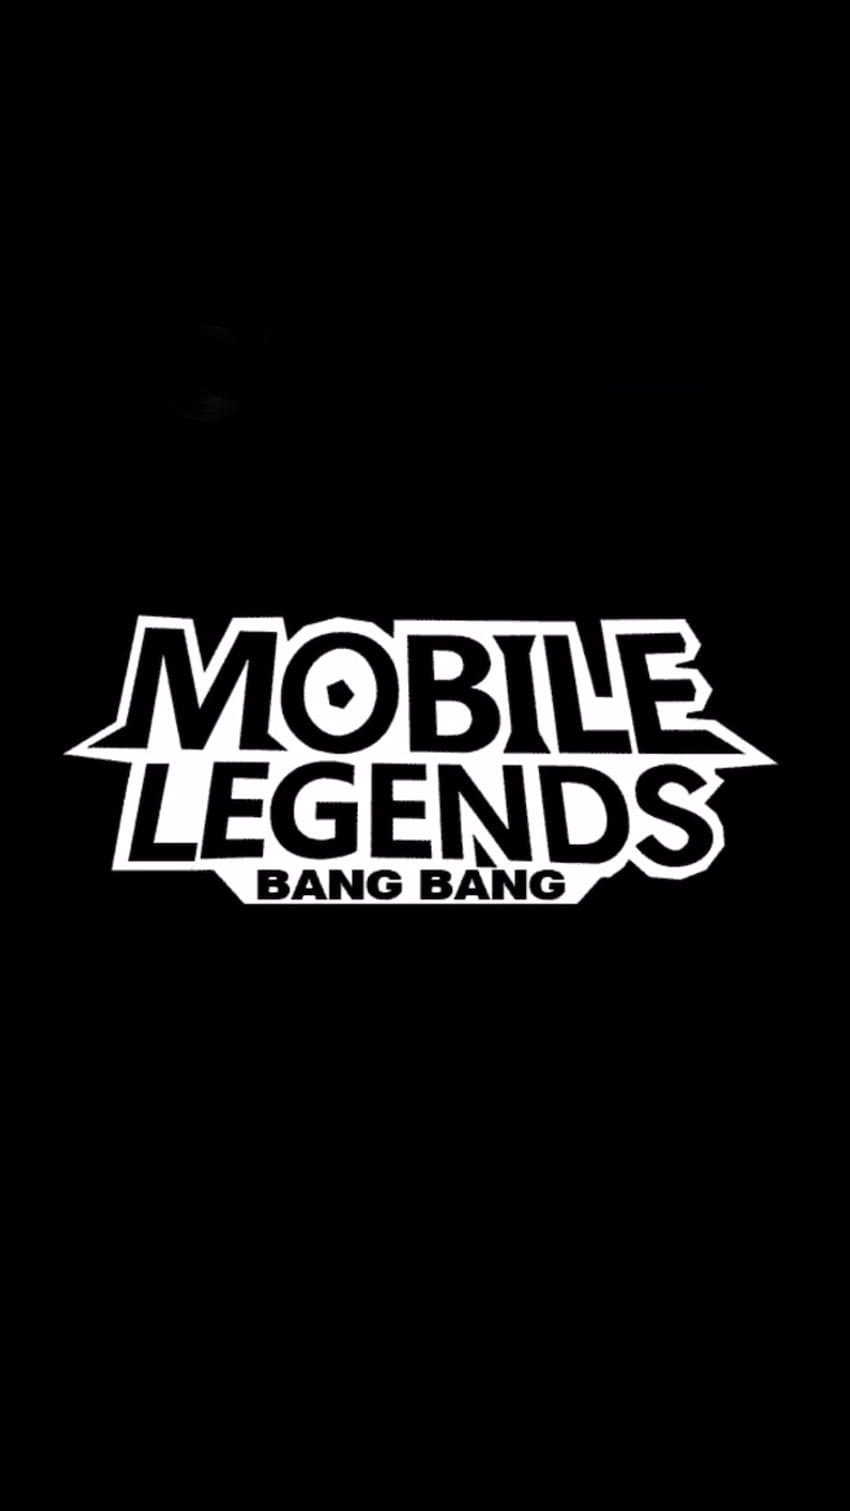 Logo Legend Mobile Legend Png – League Of Legends completo, logotipo mobile legends Papel de parede de celular HD